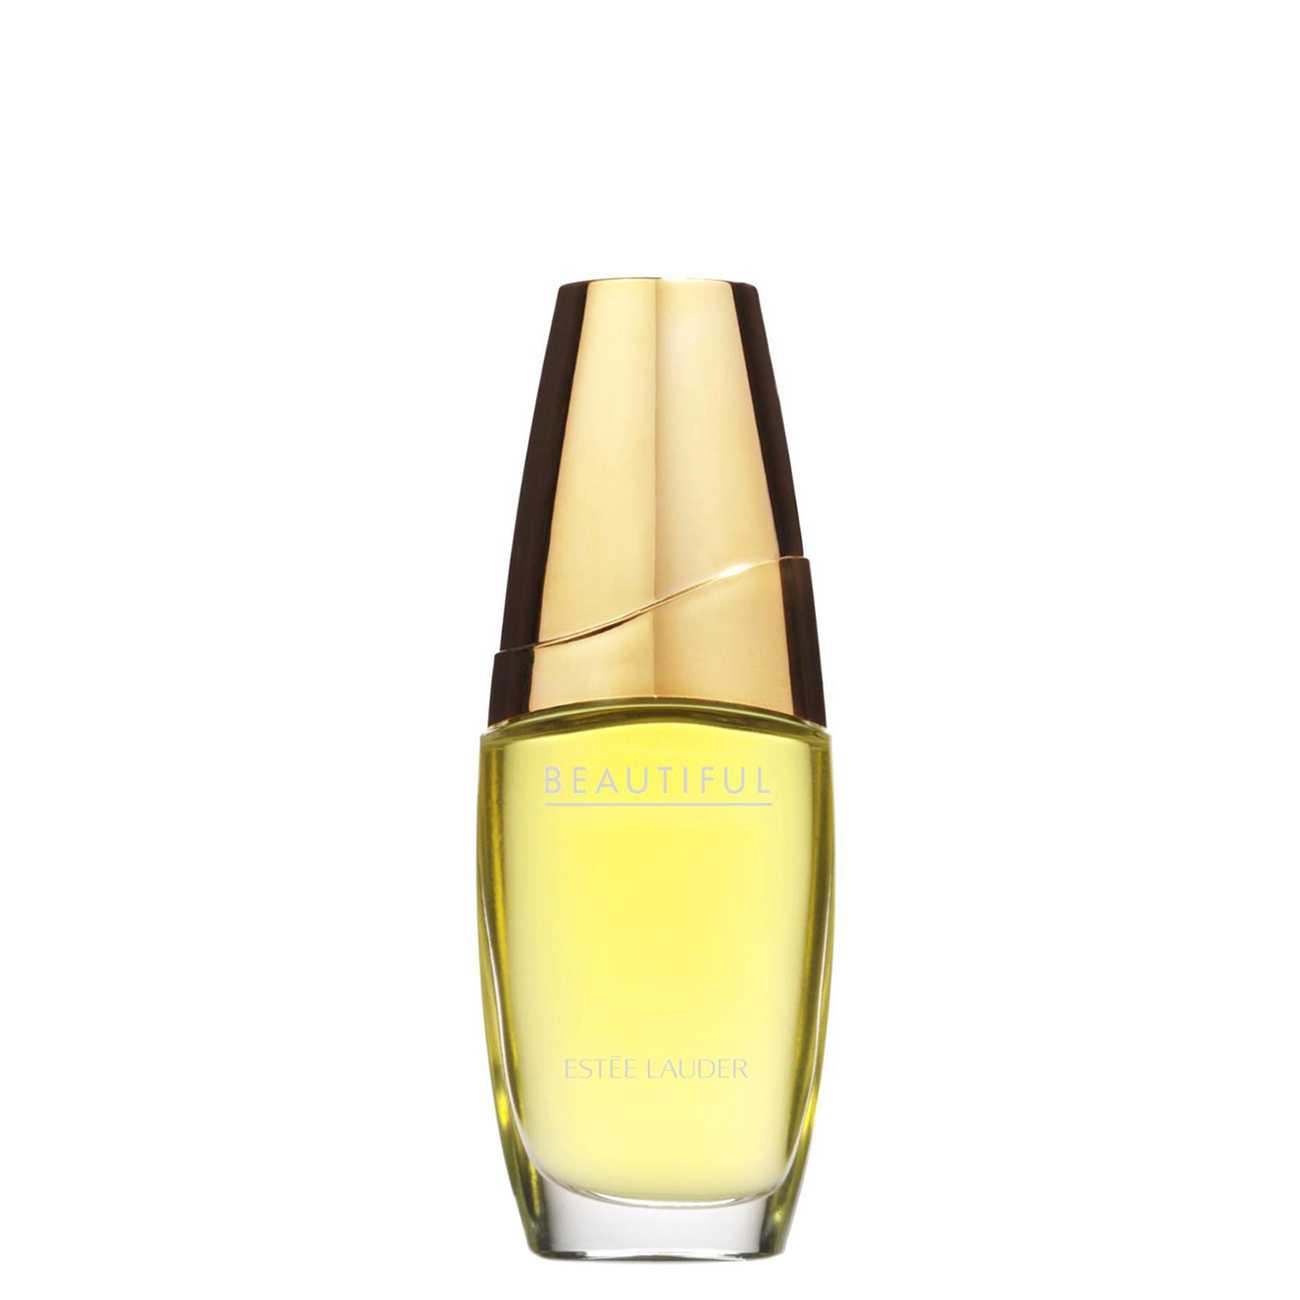 Apa de Parfum Estée Lauder BEAUTIFUL 75ml cu comanda online